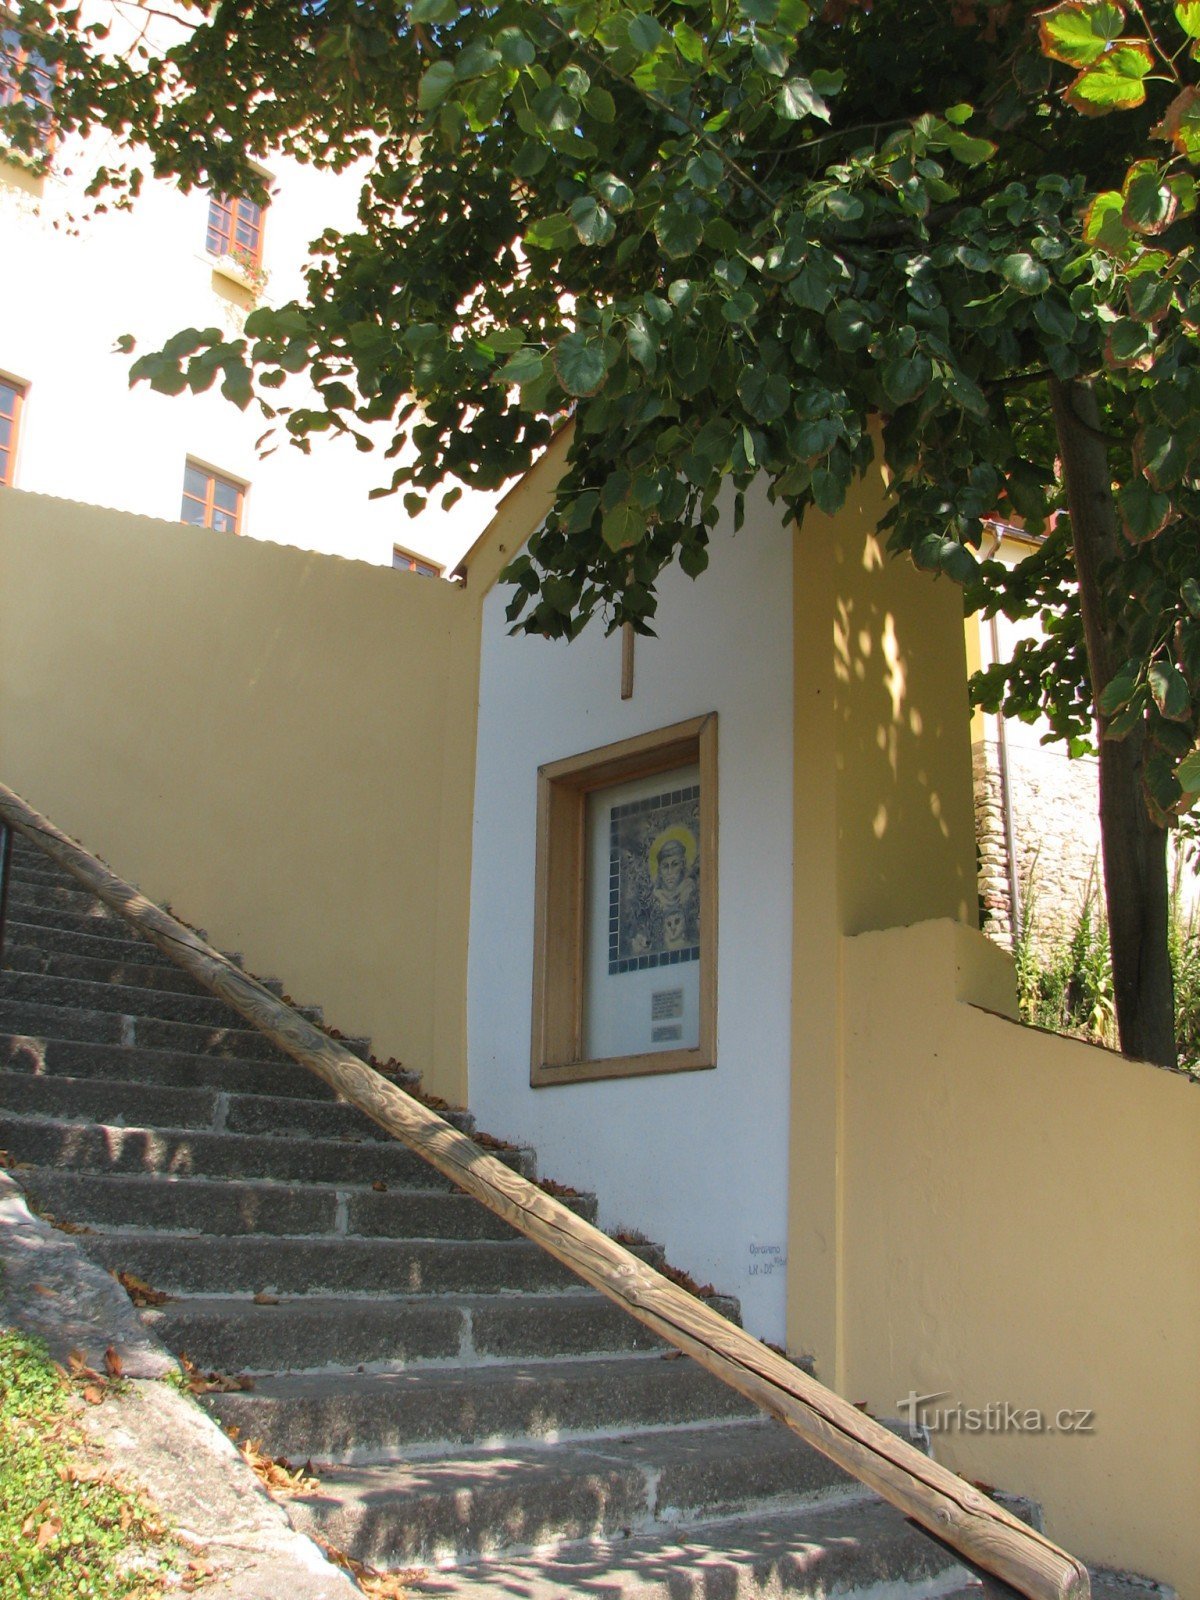 Escalier Bechyňa